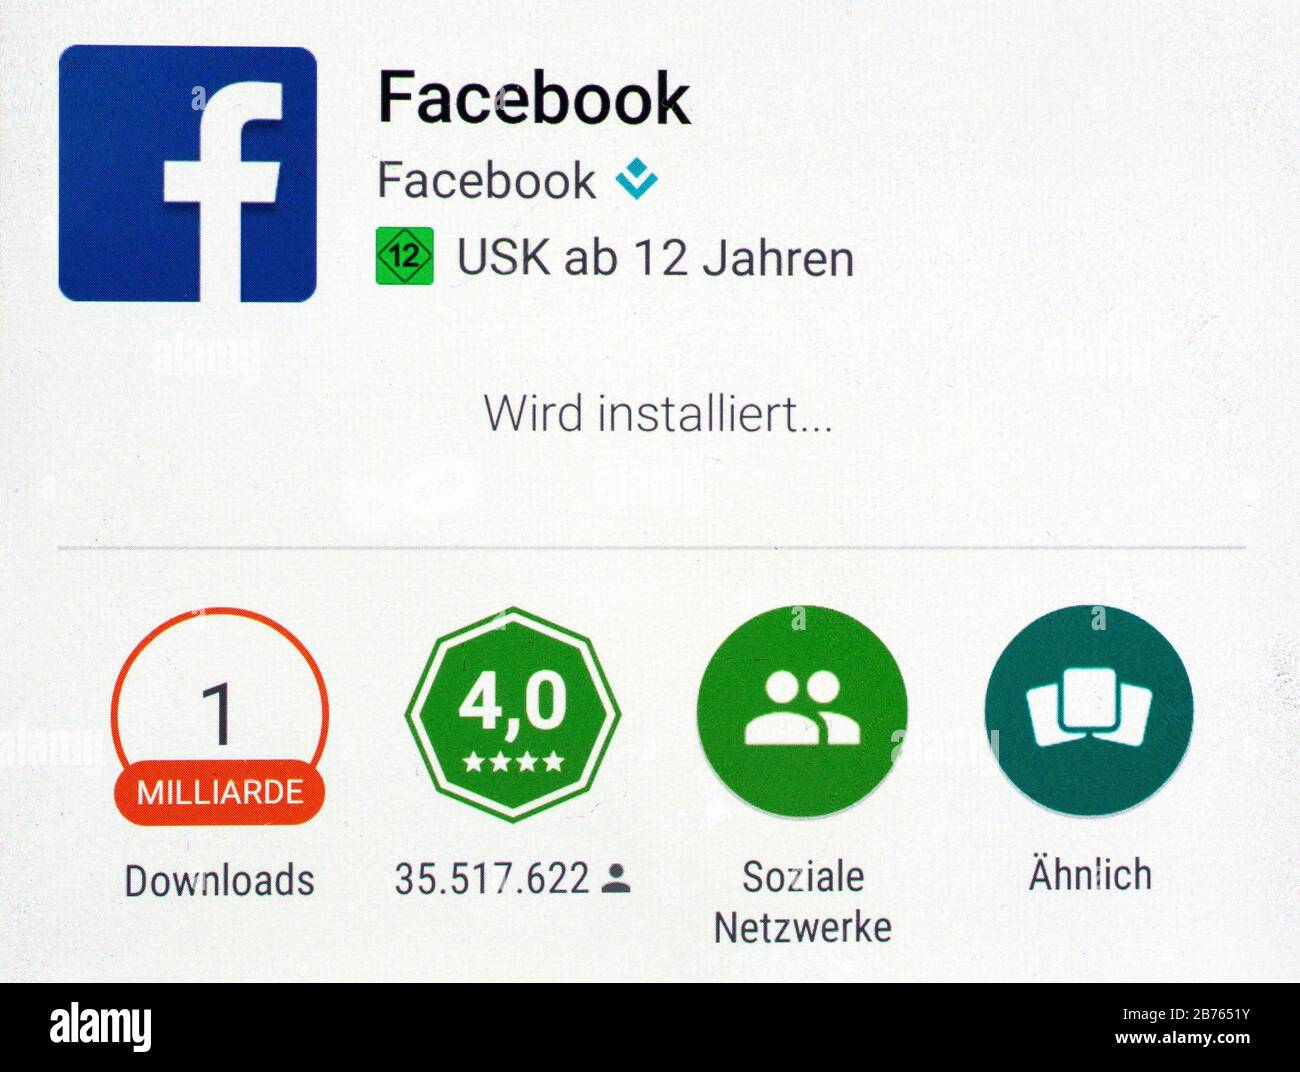 Auf einem Bildschirm eines Android-Smartphones wird der Download der Facebook-App am 12.01.2016 angezeigt. Die Facebook-App wurde bereits über 1 Milliarde Mal heruntergeladen. [Automatisierte Übersetzung] Stockfoto